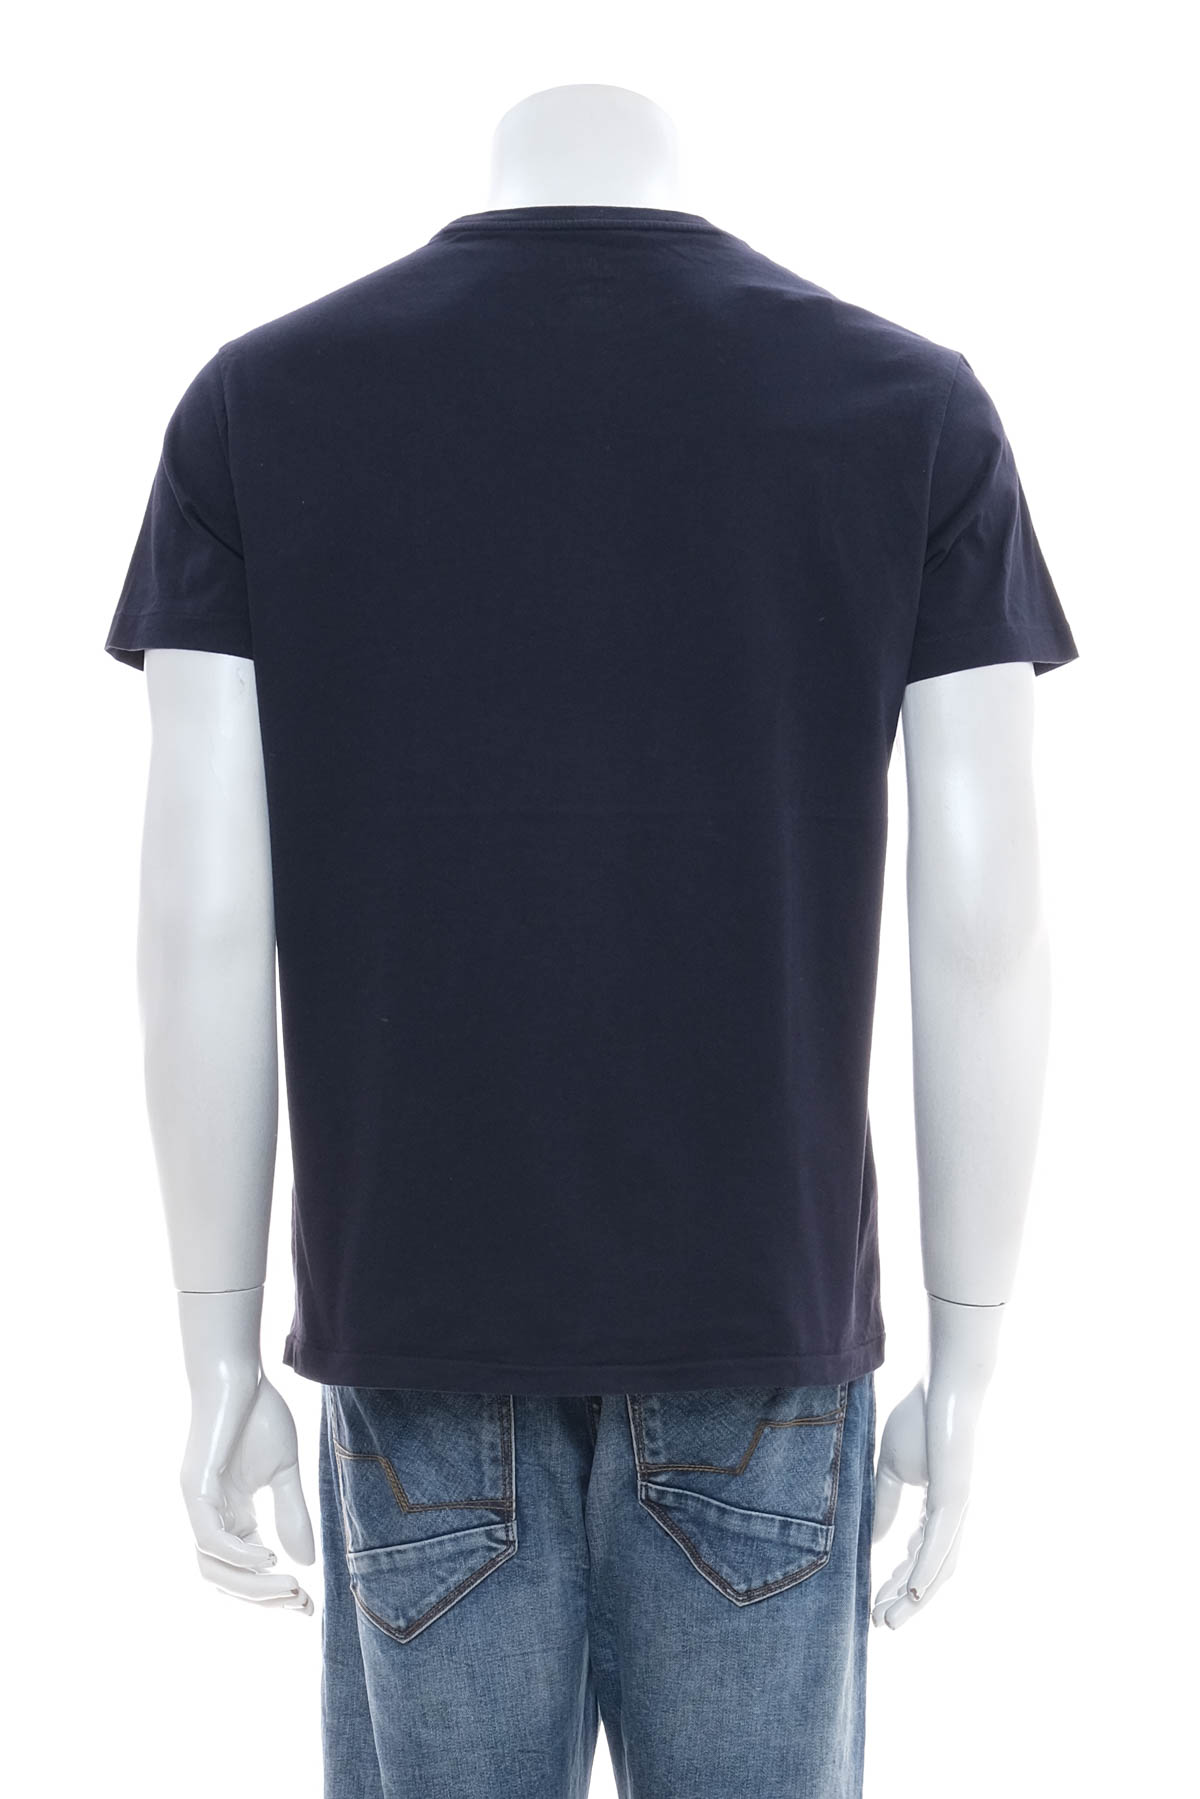 Ανδρικό μπλουζάκι - Ralph Lauren - 1